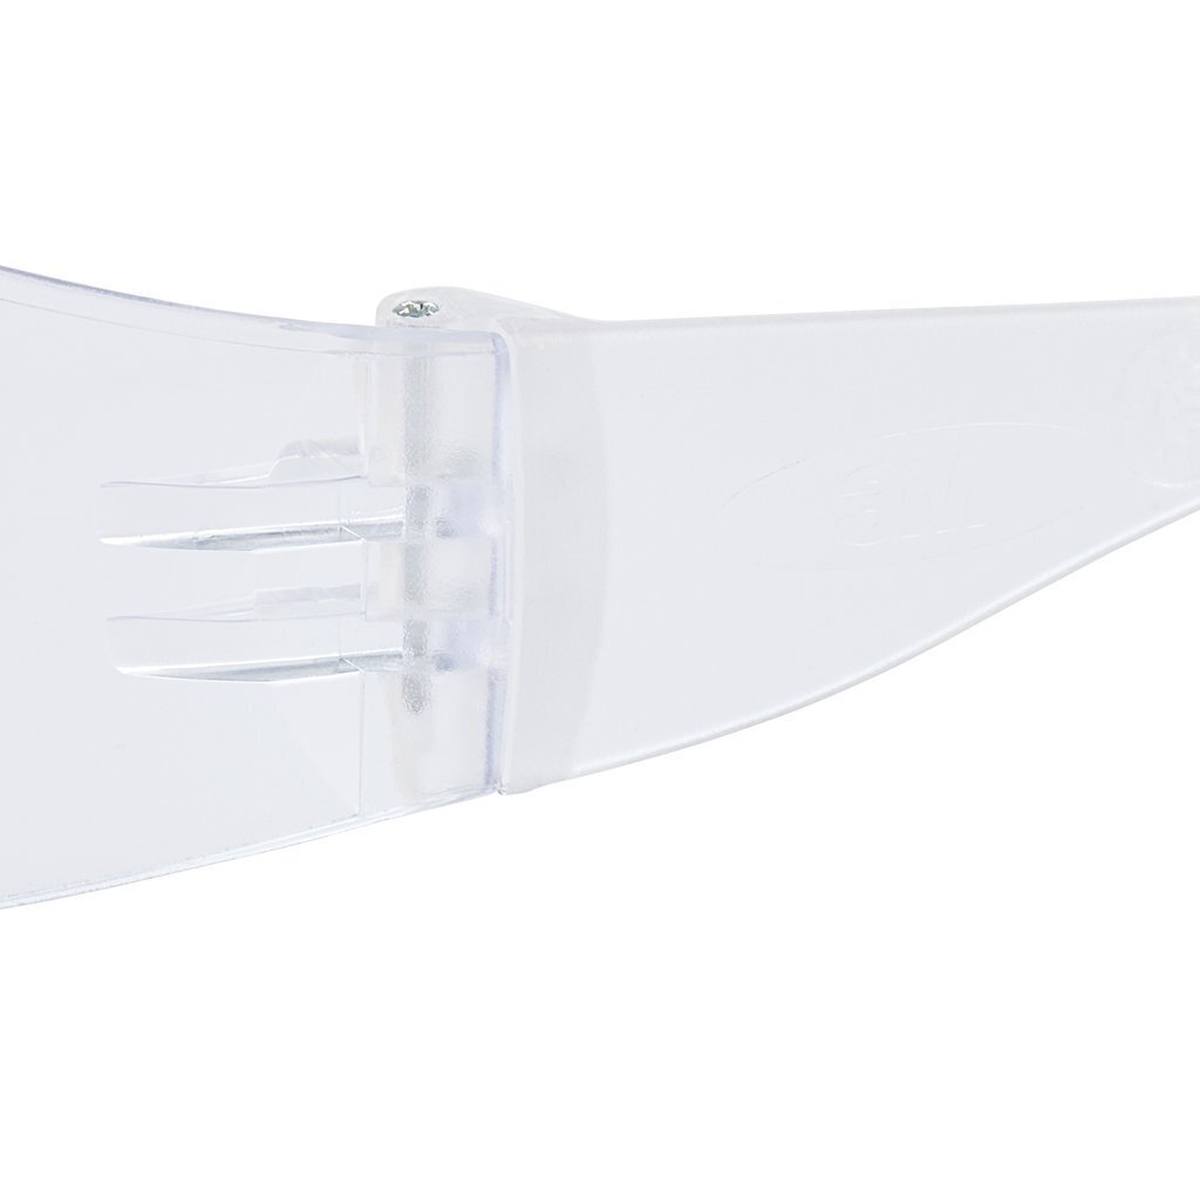 3M Lunettes de protection Virtua avec revêtement anti-rayures, verres transparents, 71500-00001